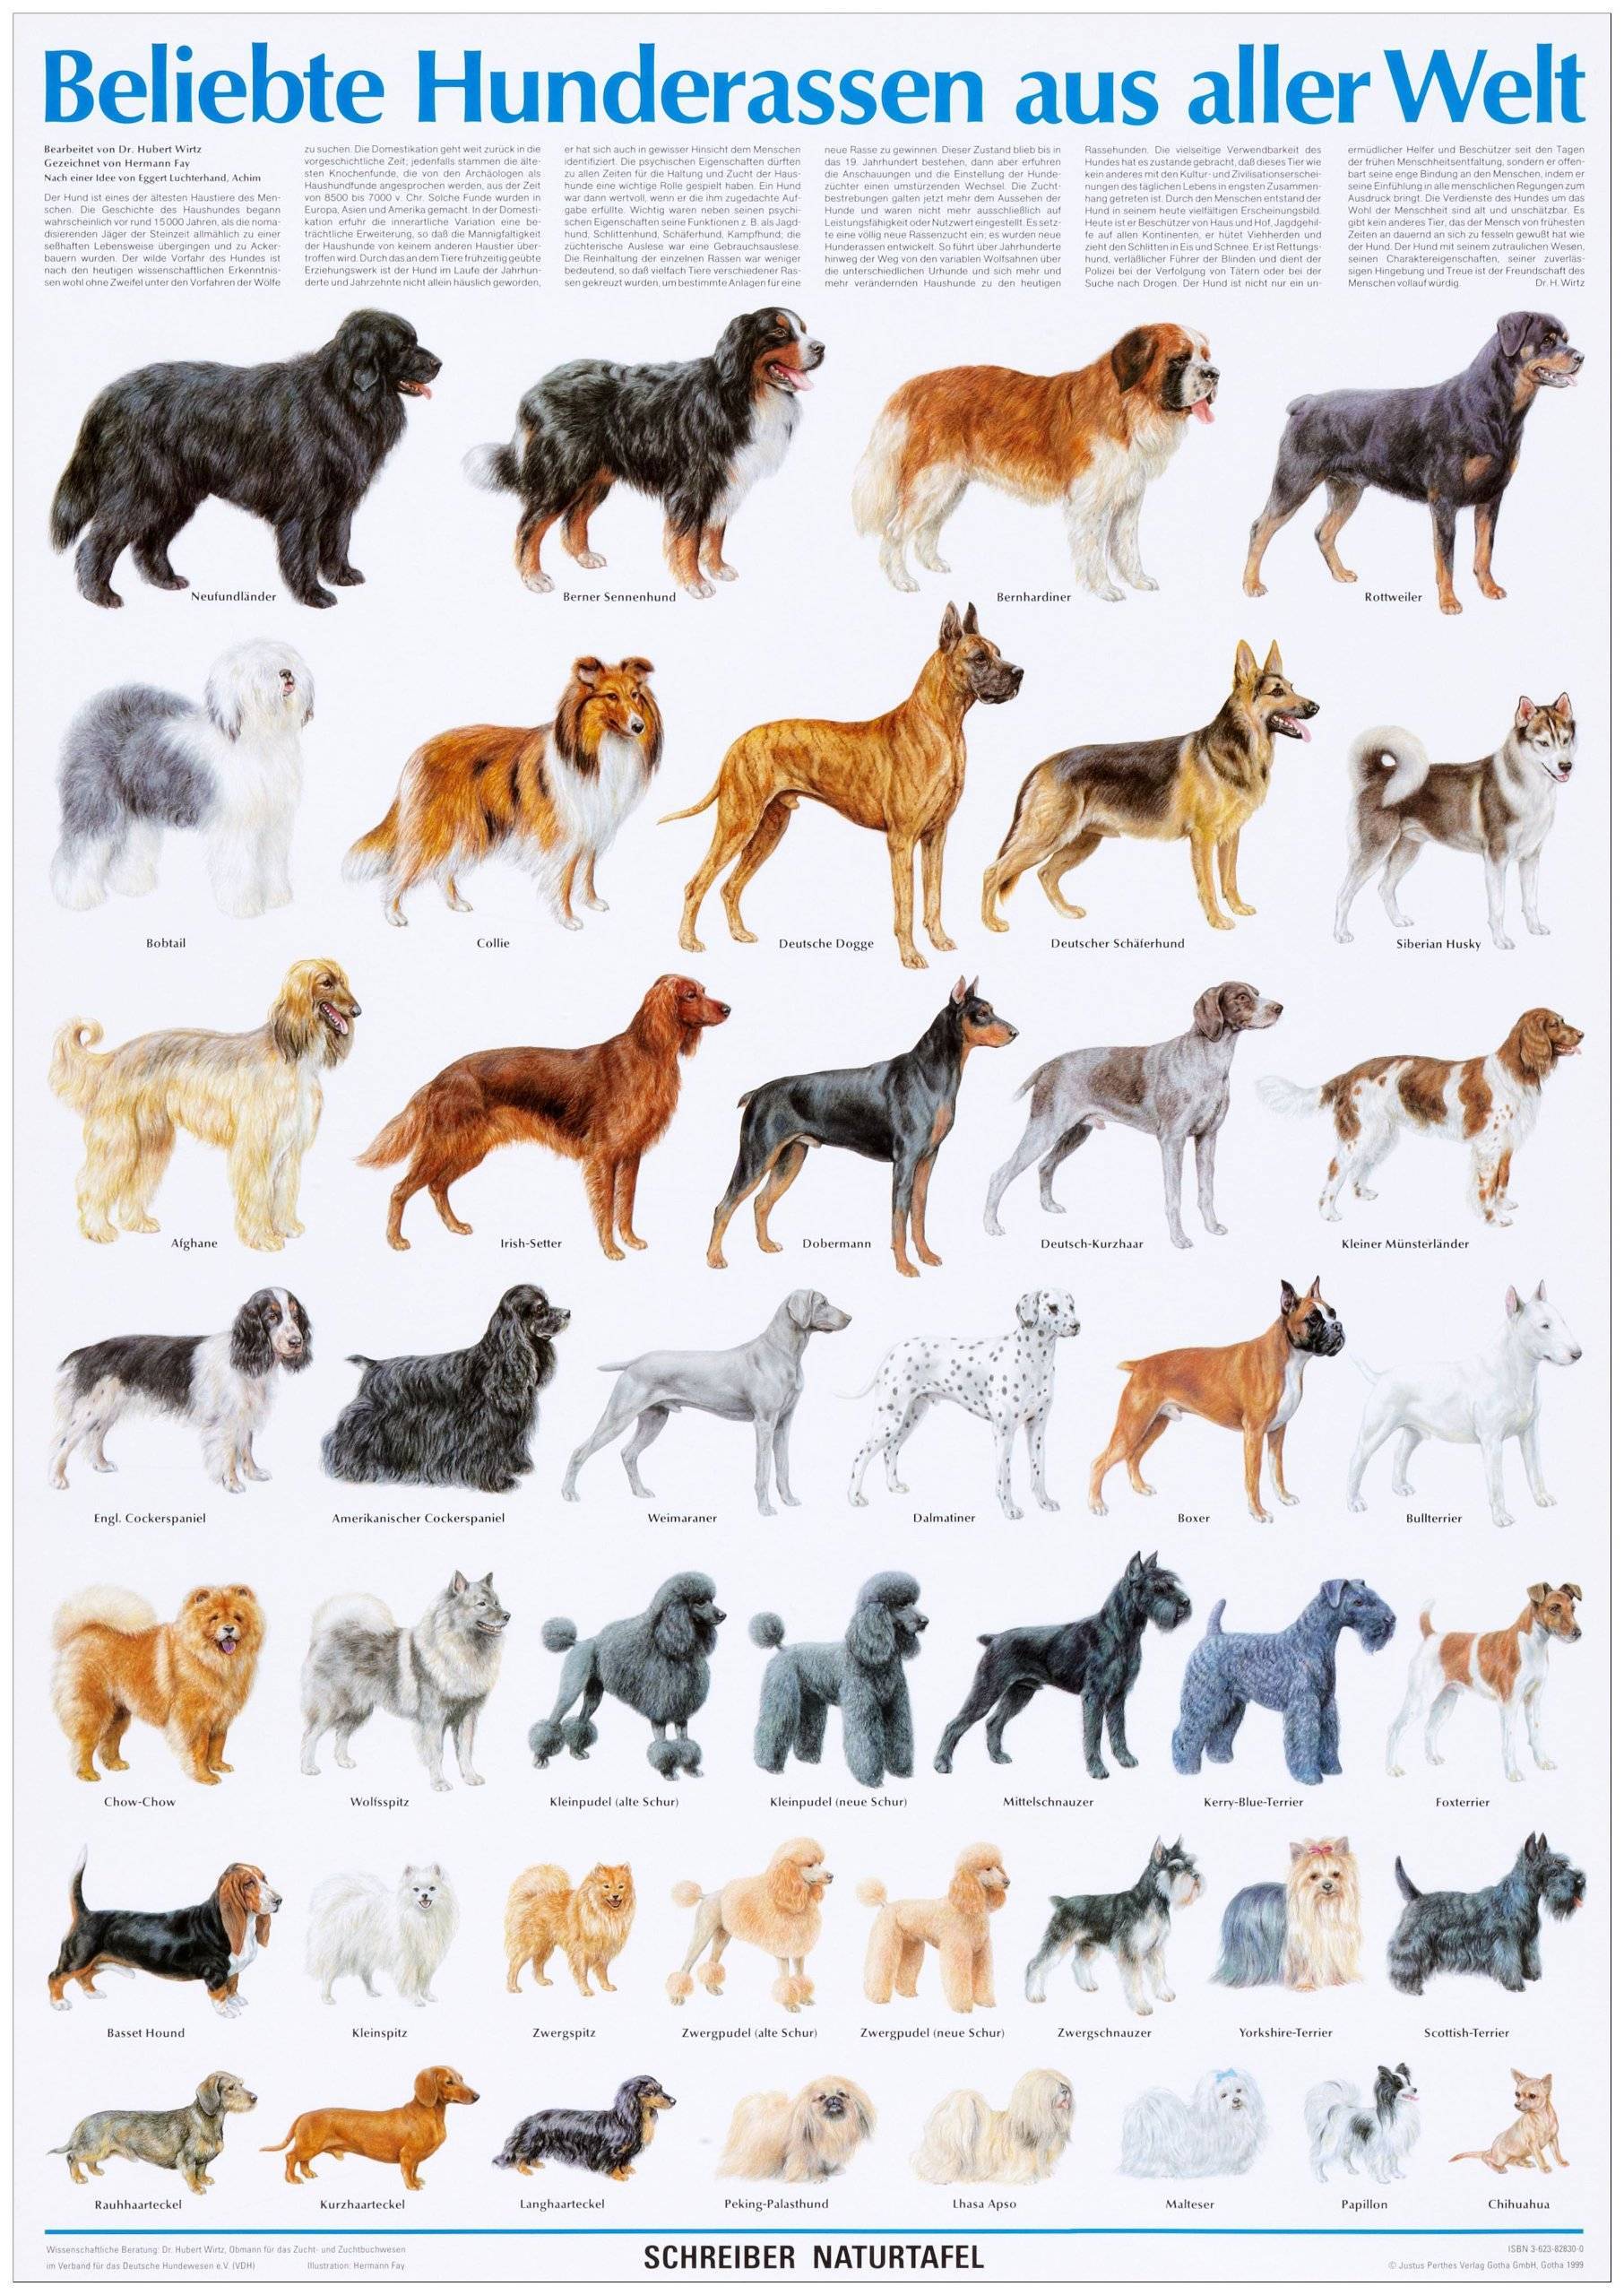 Средние породы собак - названия и фото (каталог)